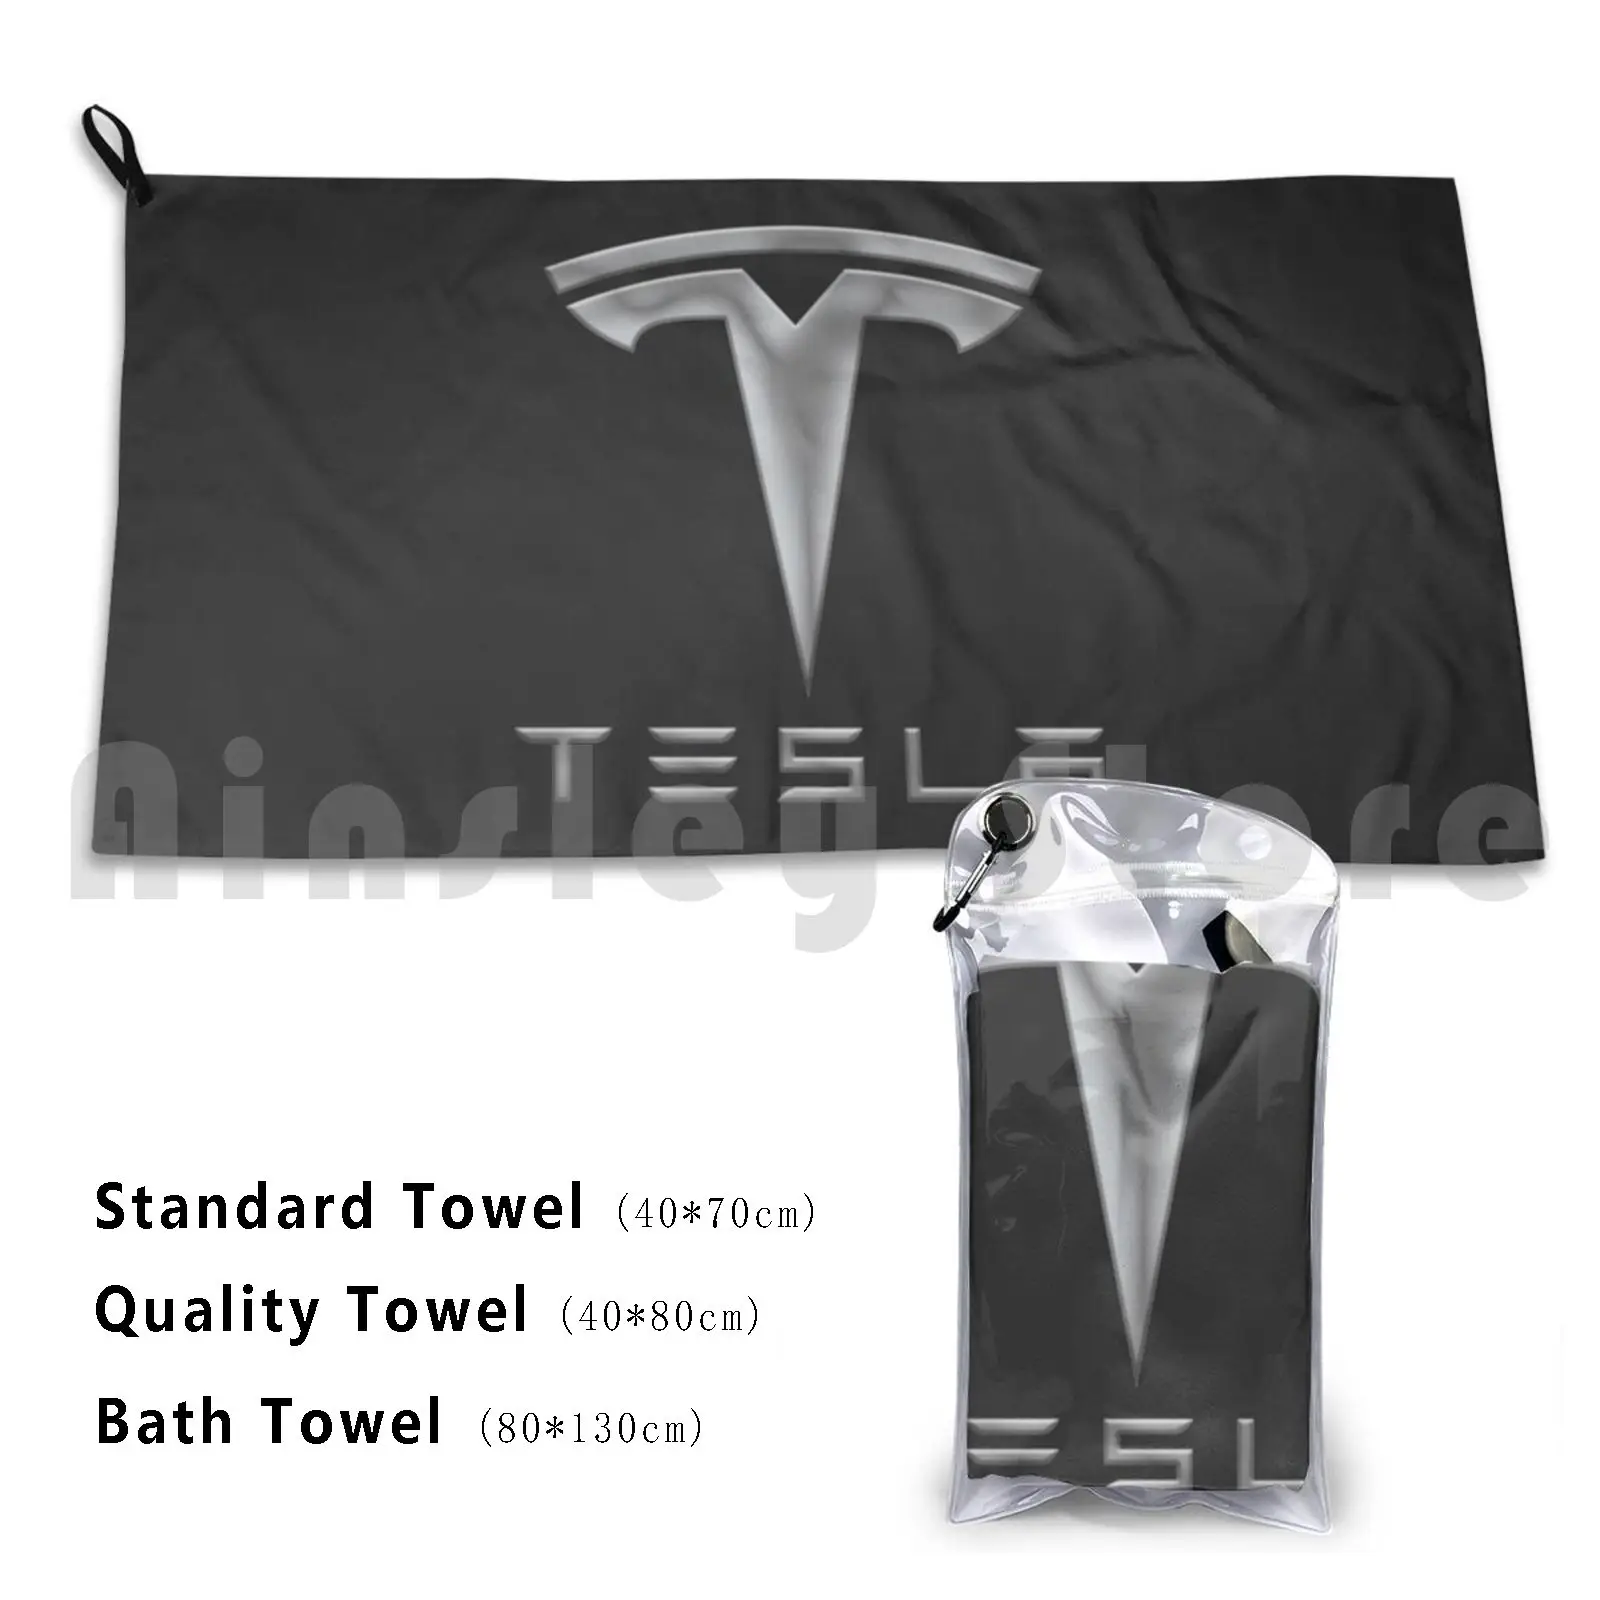 

Банное полотенце Tesla, Пляжная Подушка Tesla, Космический арбуз, мусс, Spacex, мусс, арбуз, наука, космос, X, Дымчатая трава, тупый дизайн